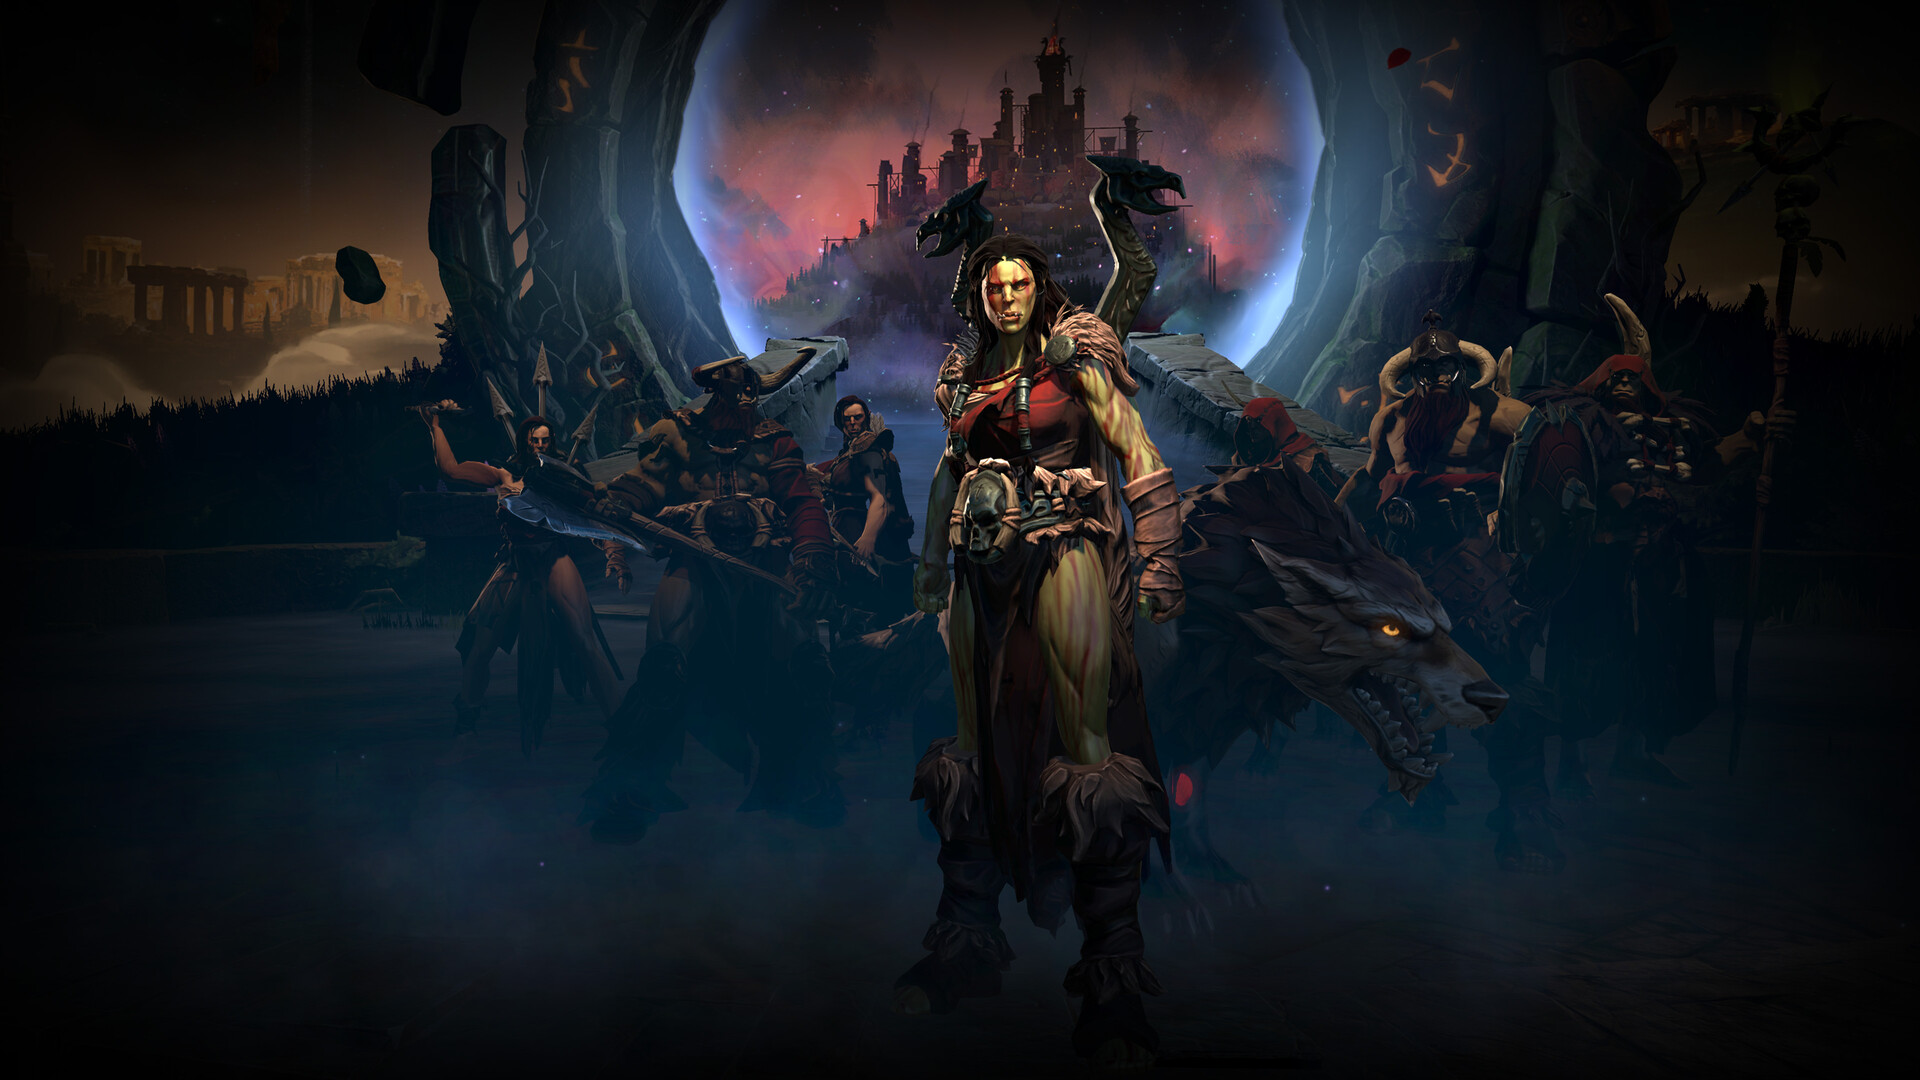 Age of Wonders 4: Dragon Dawn on Steam